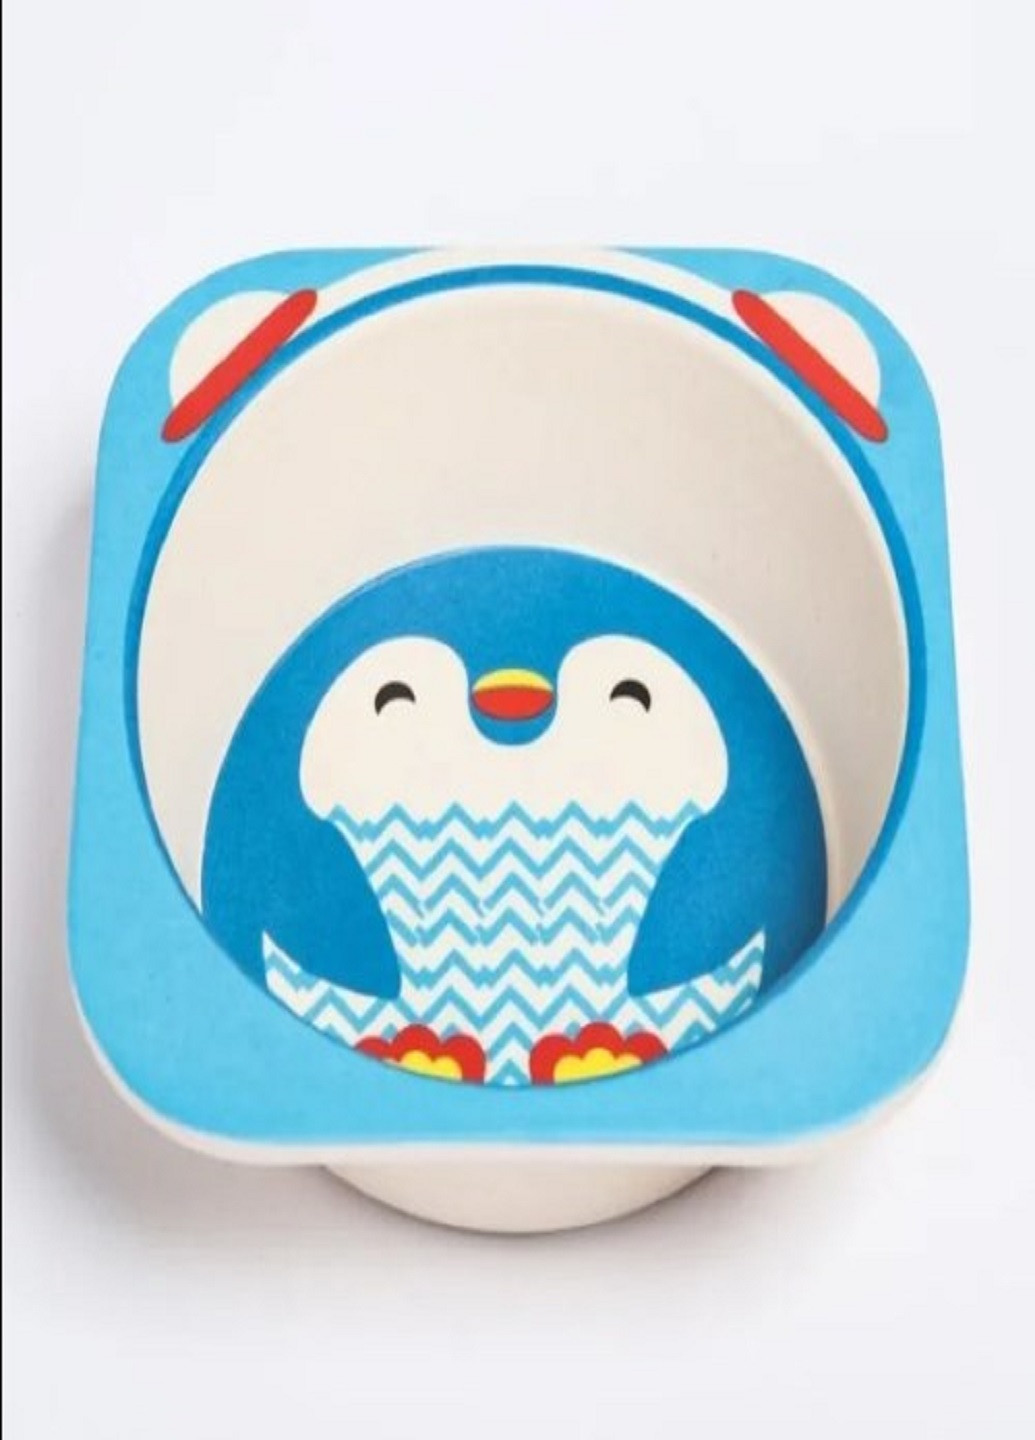 Бамбуковый набор детской посуды ECO friendly product 5 предметов пингвин синий VTech (263346954)